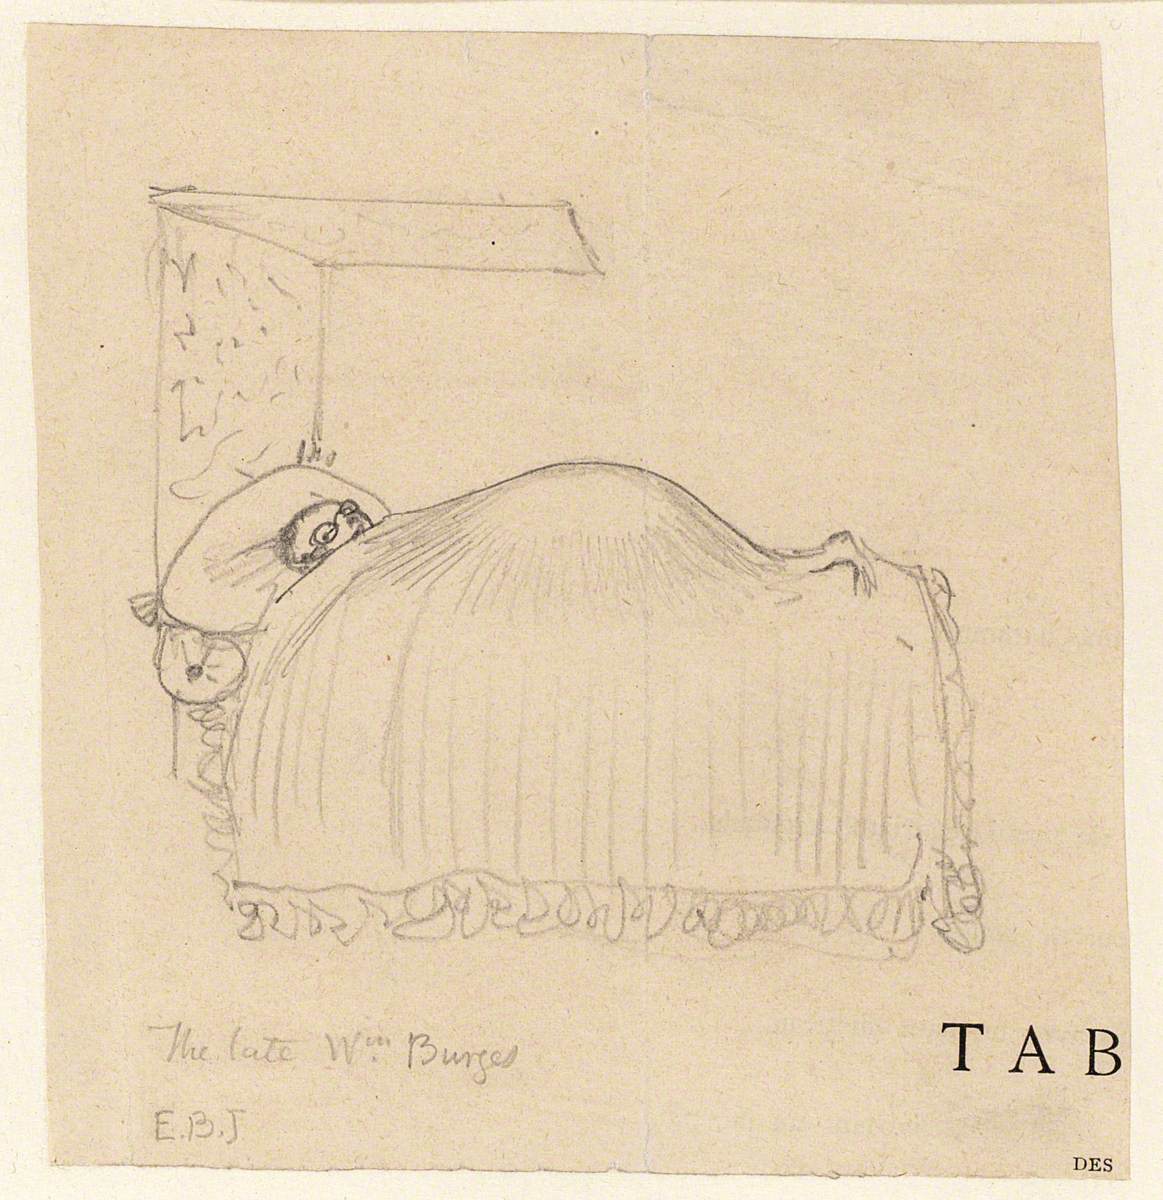 William Burges in Bed